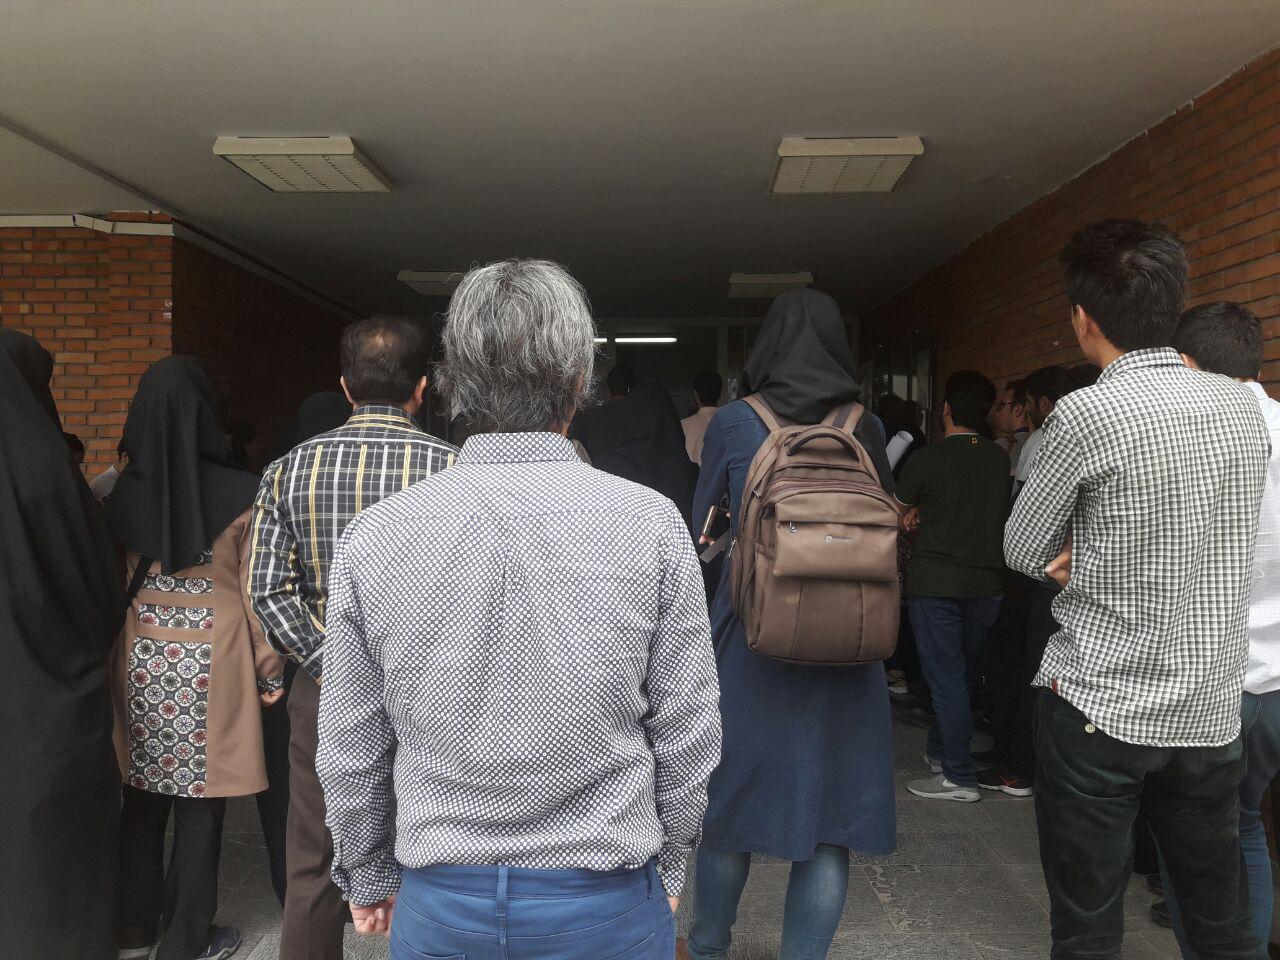 روایتی کوتاه از آنچه امروز در دانشگاه شهید بهشتی رخ داد/ دانشجویان بی خیال نمی‌شوند!